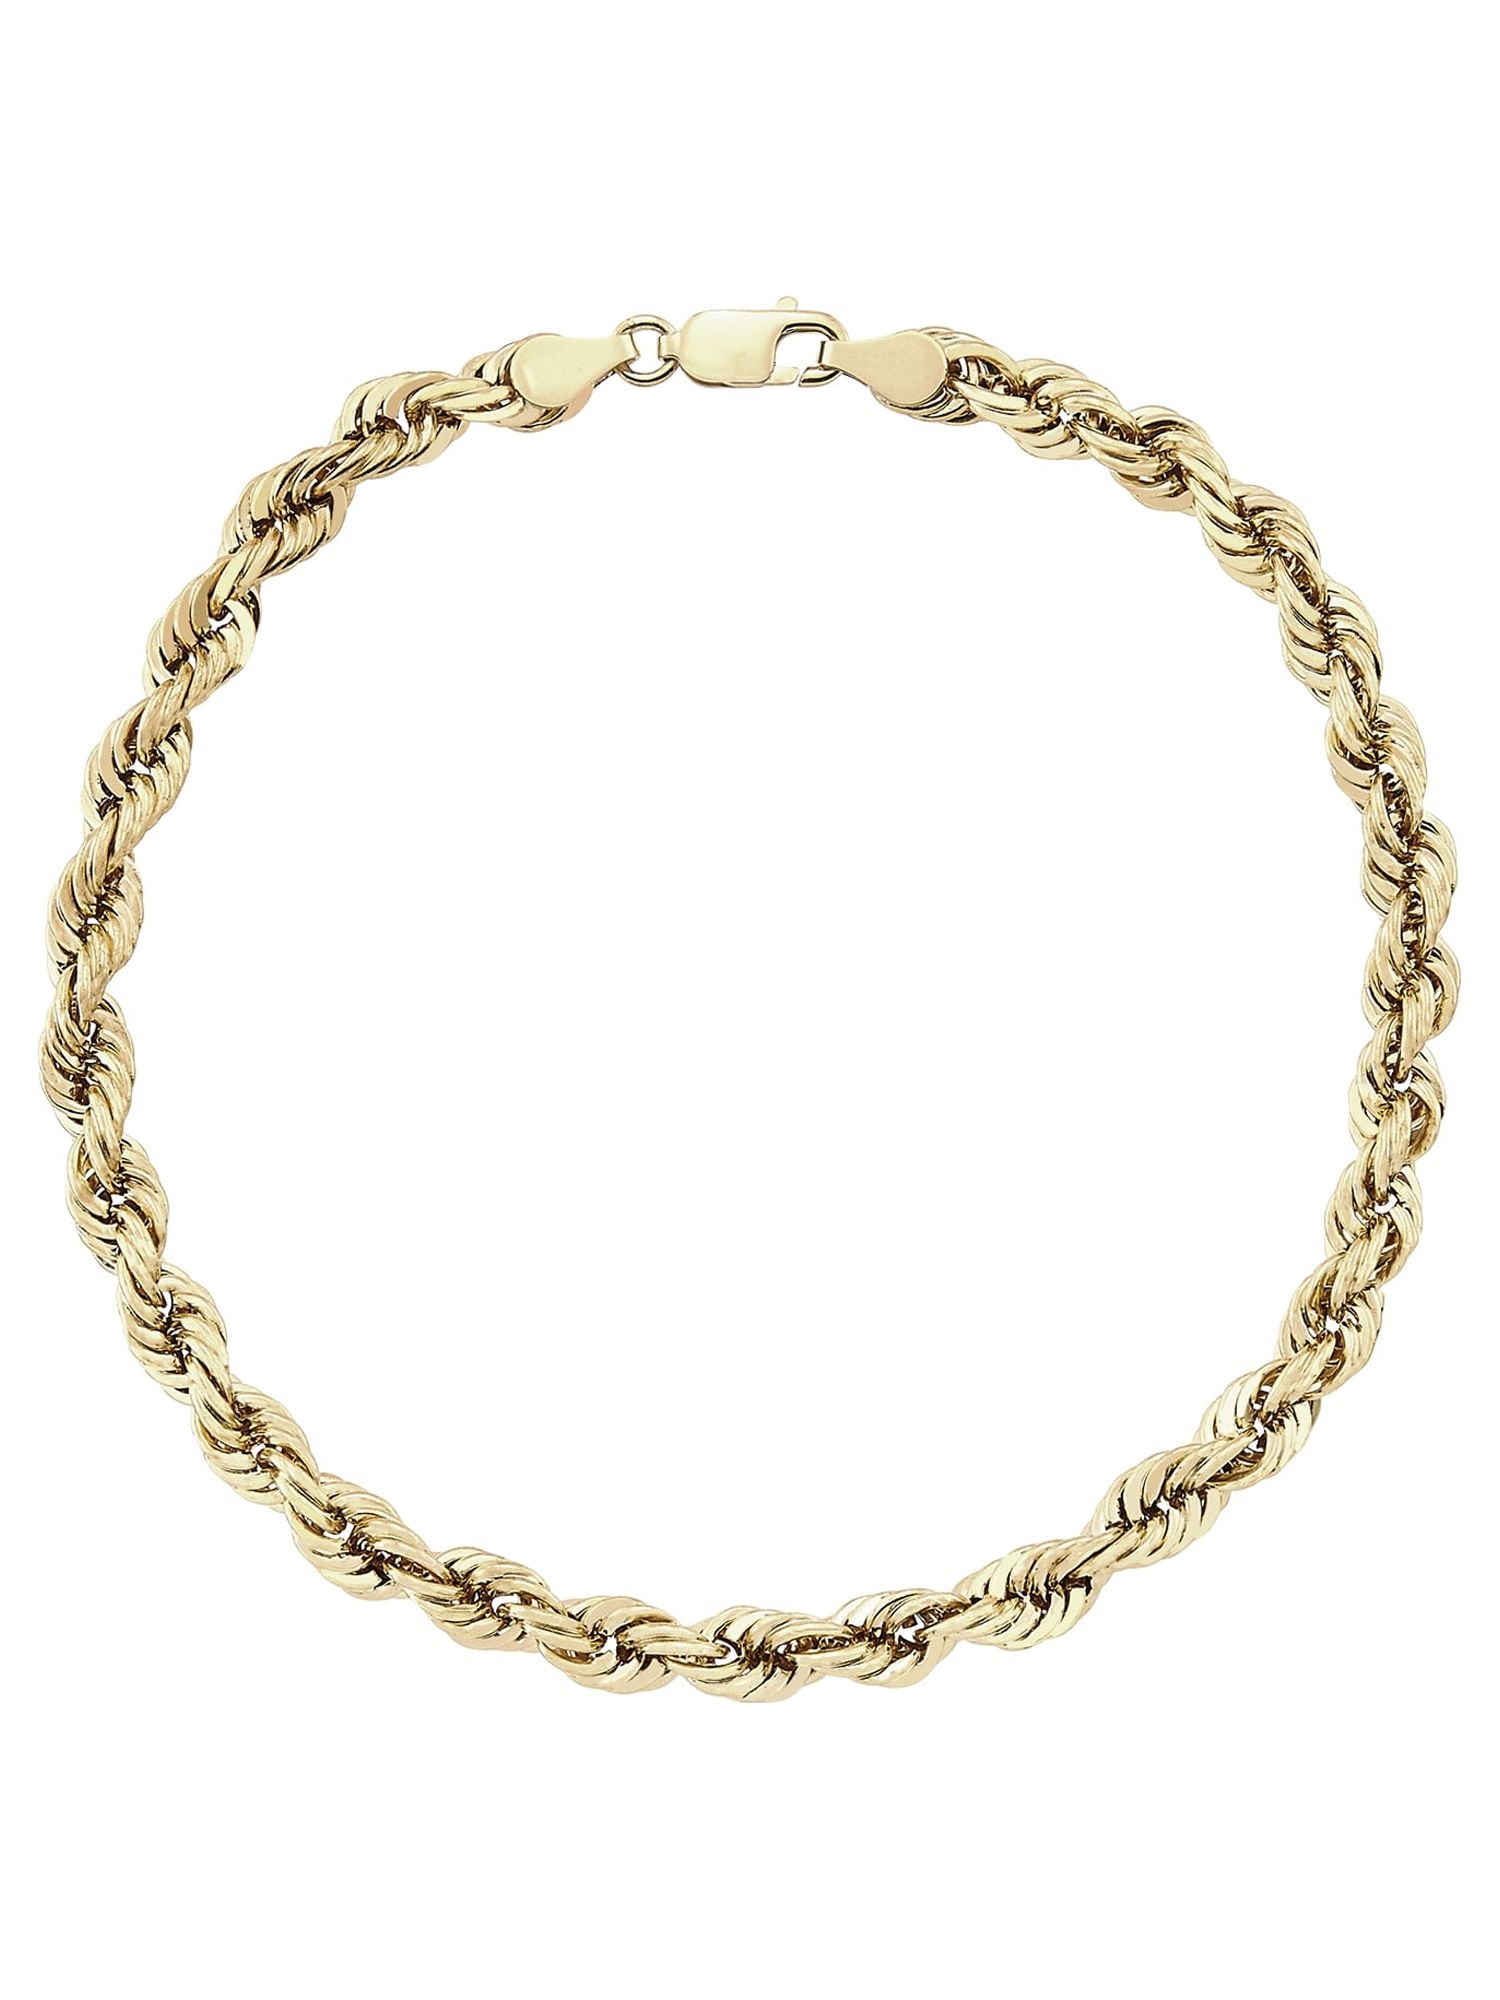 Solid Gold Cord Bracelet